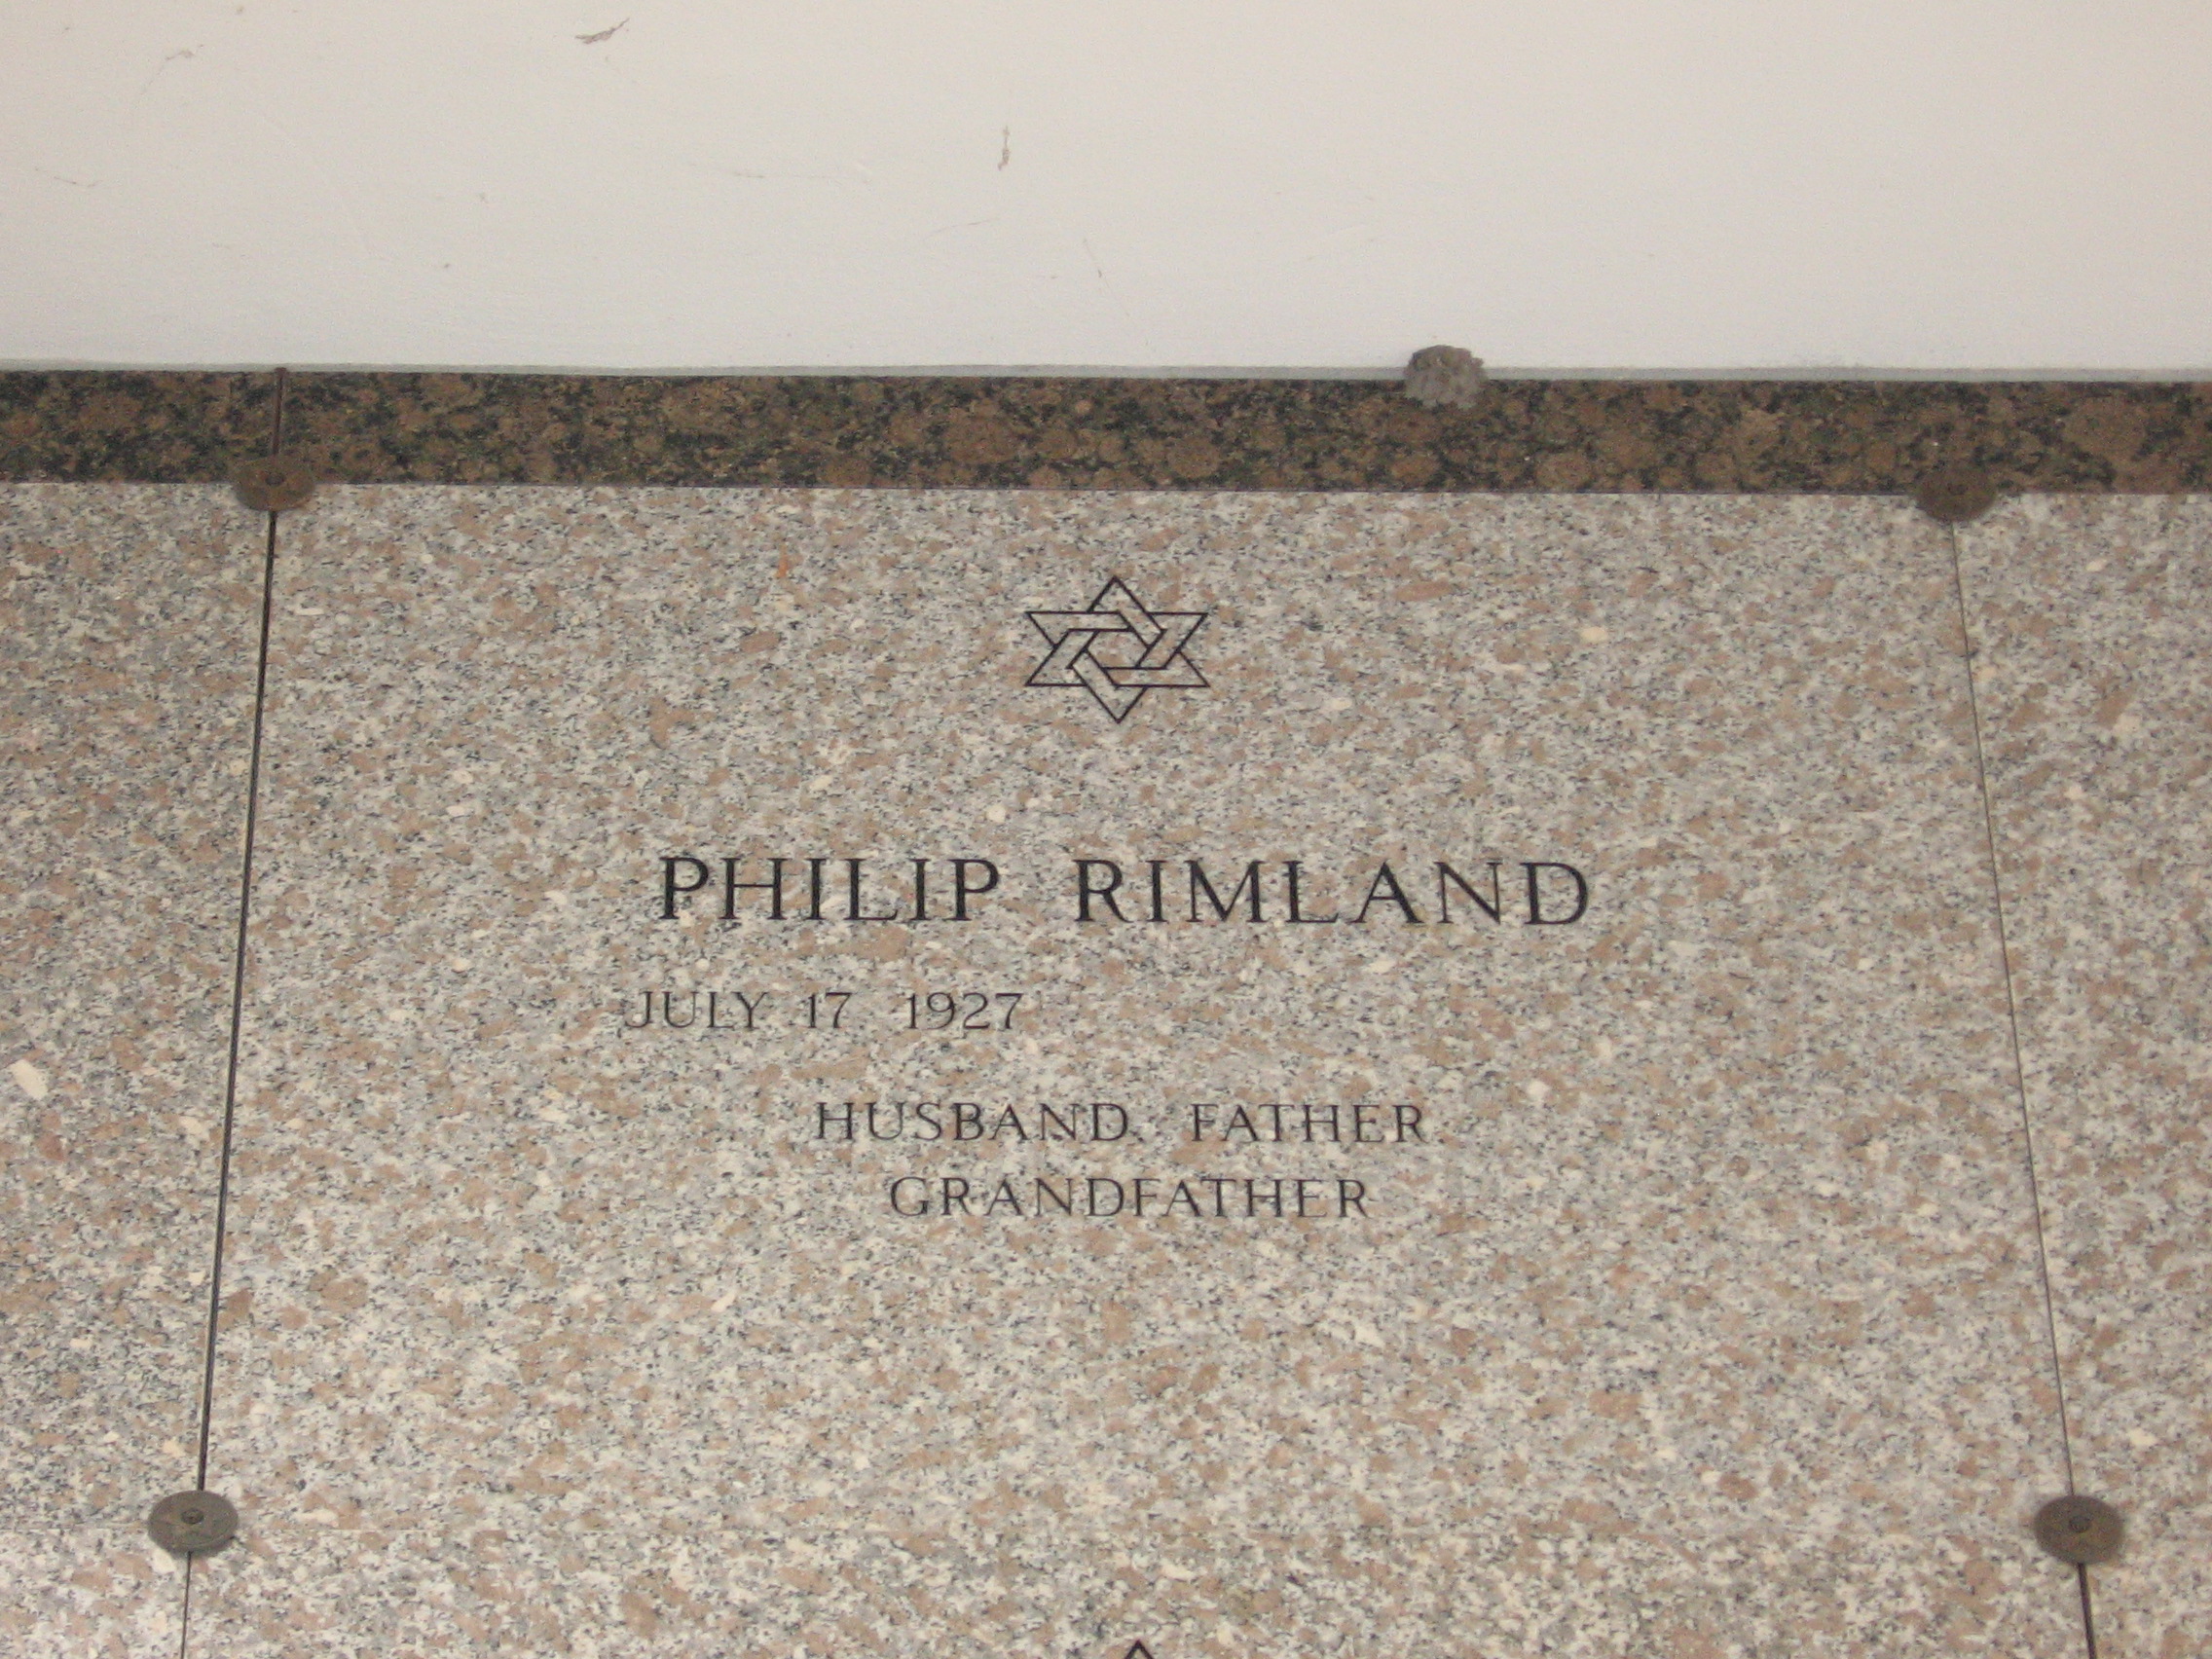 Philip Rimland